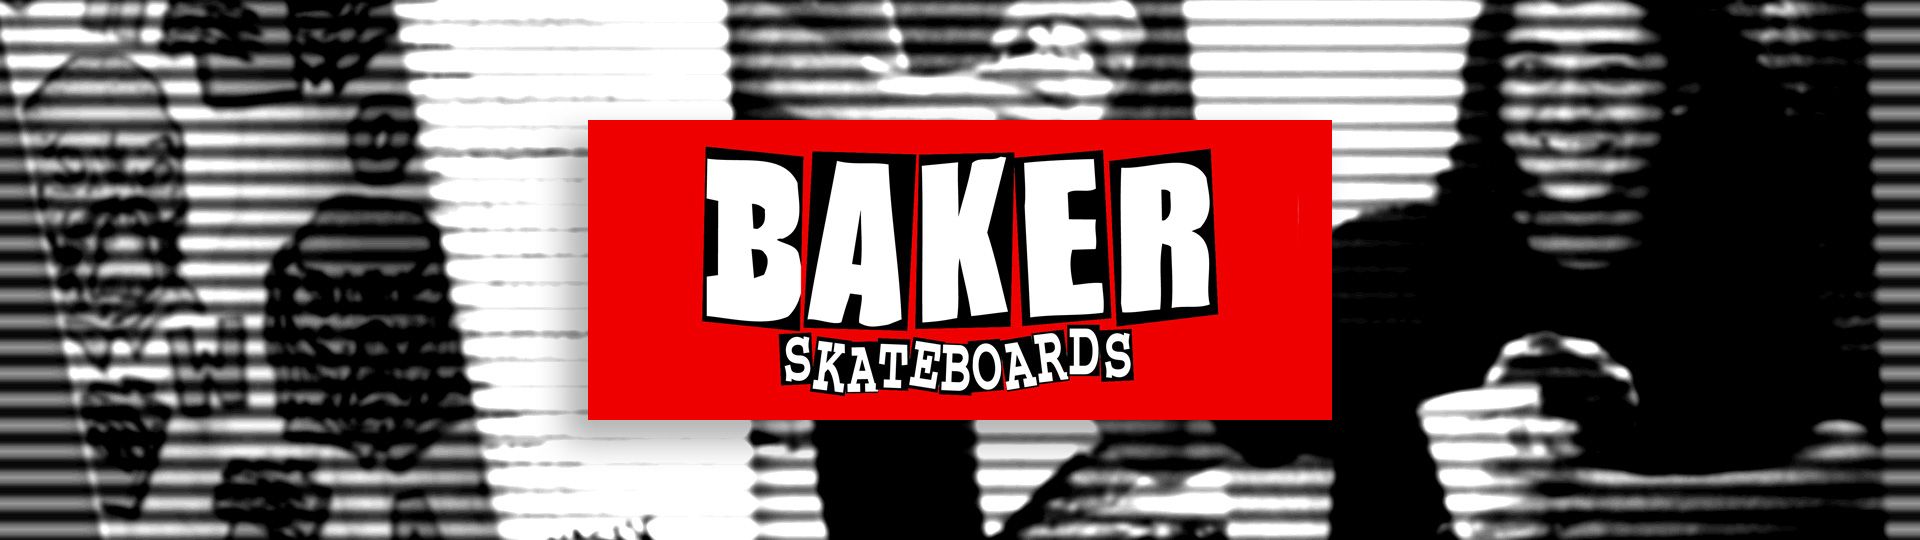 Skateboard brands: An A